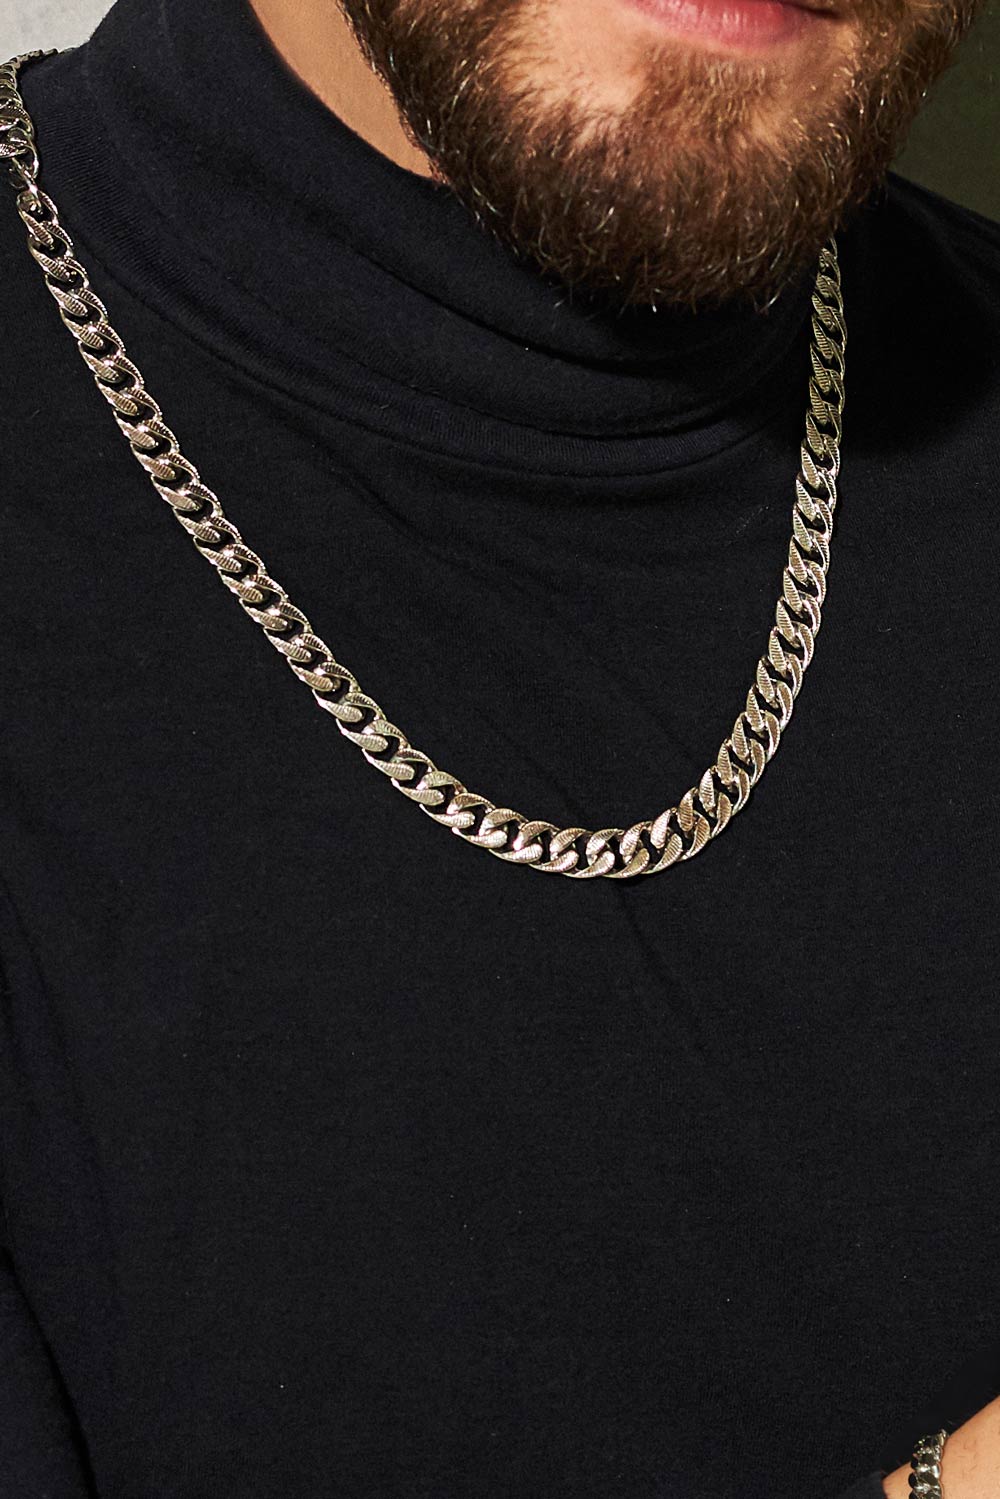 Мужская серебряная цепочка на шею Zancan ESC002-N с панцирным плетением —купить в AllTime.ru — фото